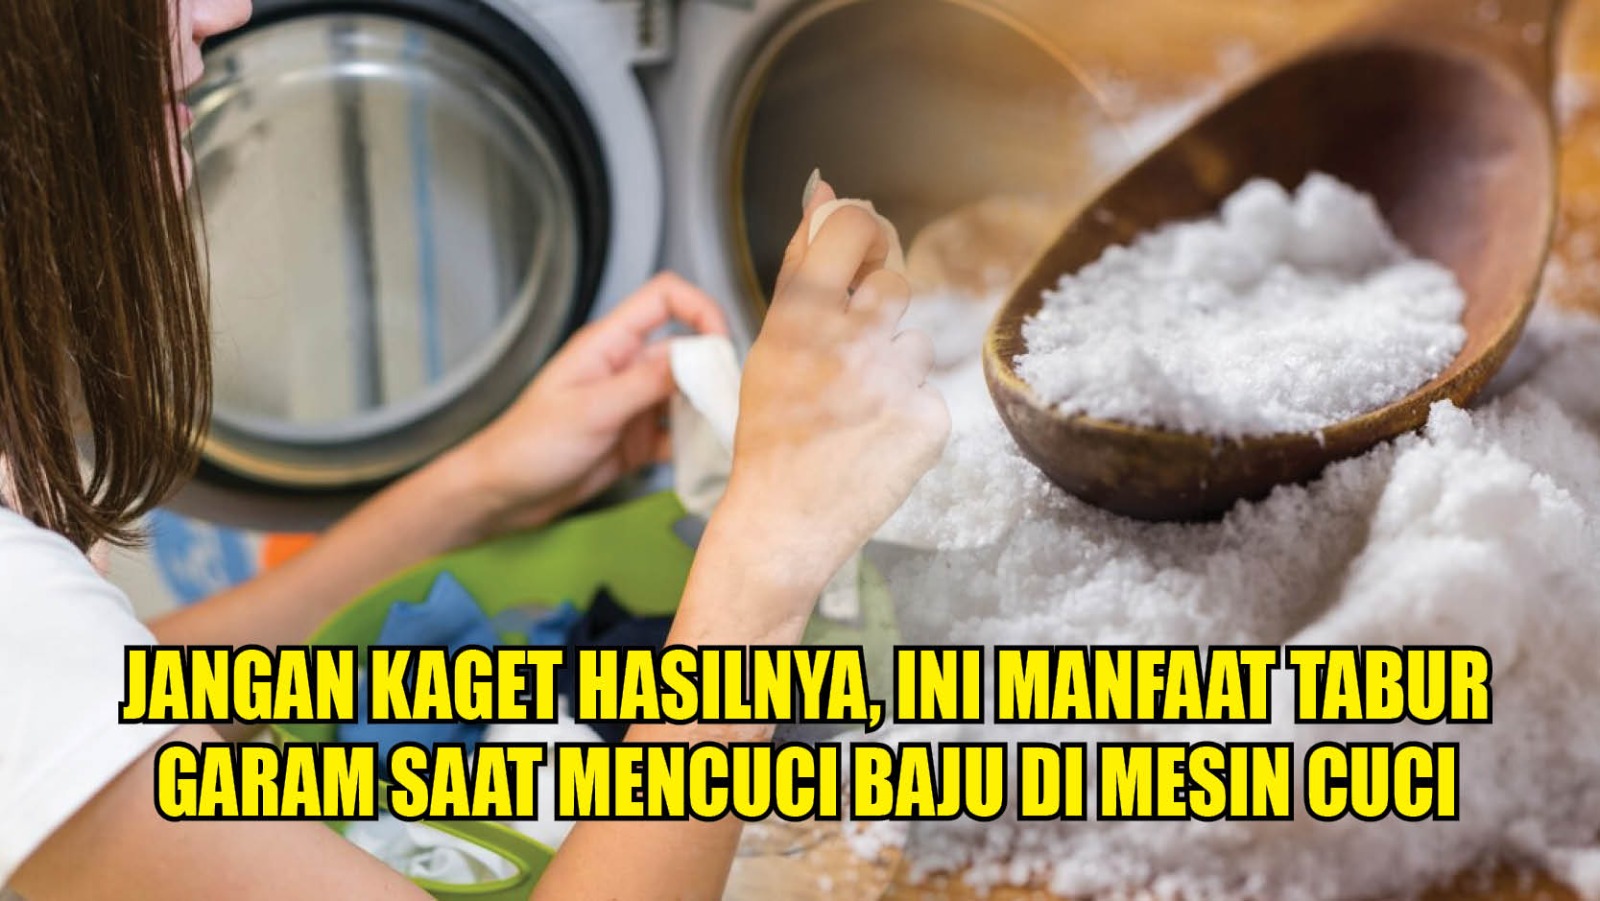 Jangan Kaget Lihat Hasilnya, Ini Manfaat Garam saat Mencuci Baju di Mesin Cuci 